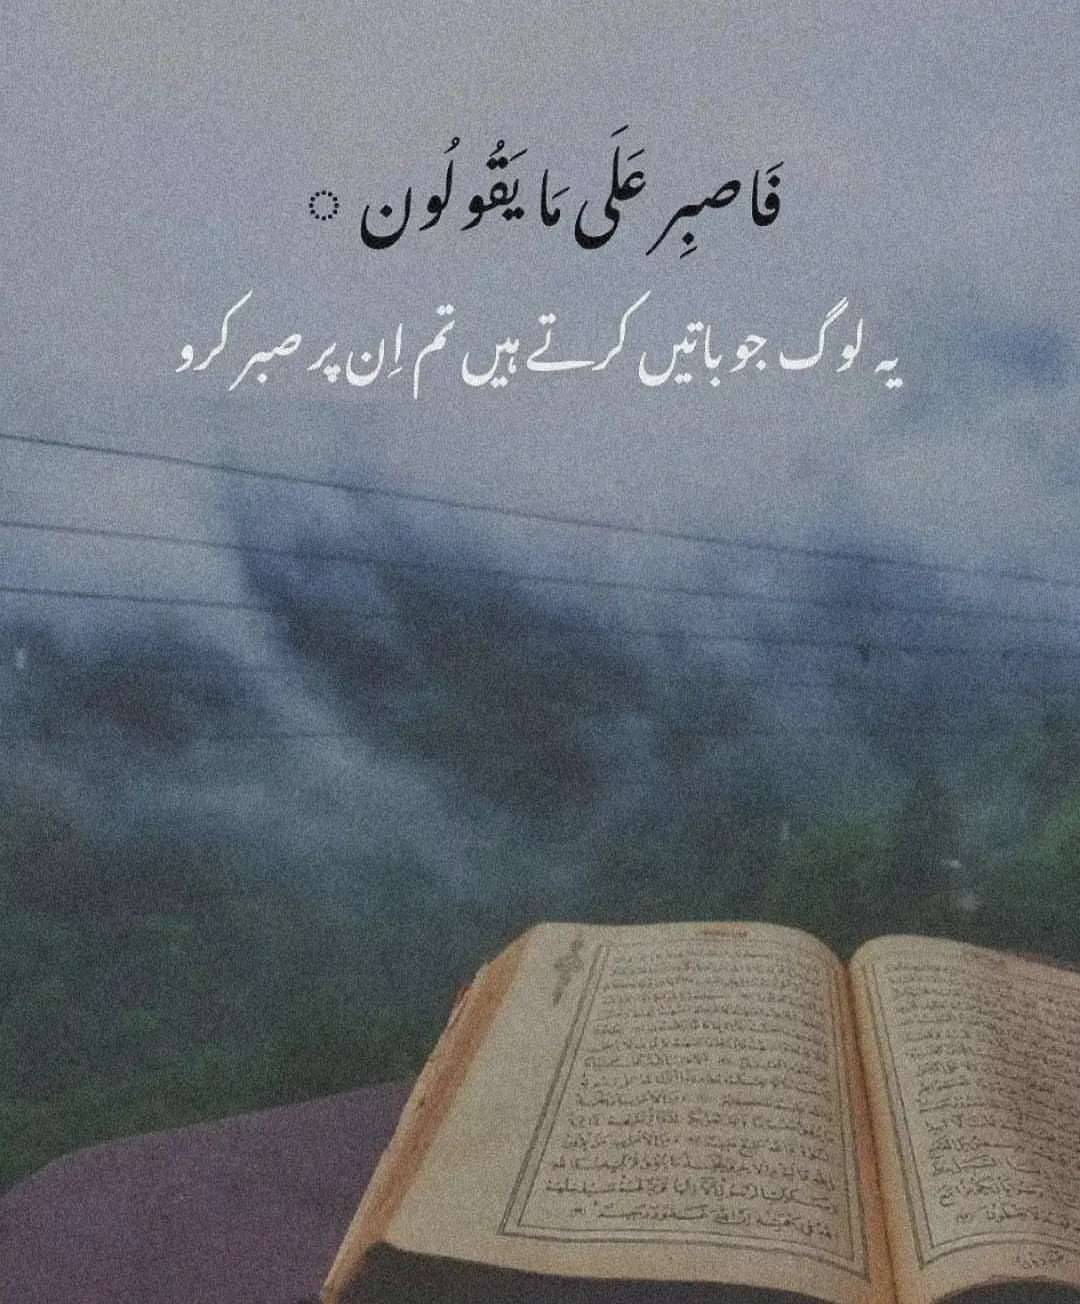 Urdu Poetry — #sabar #beshak #quran #quoteoftheday (at Lahore,...